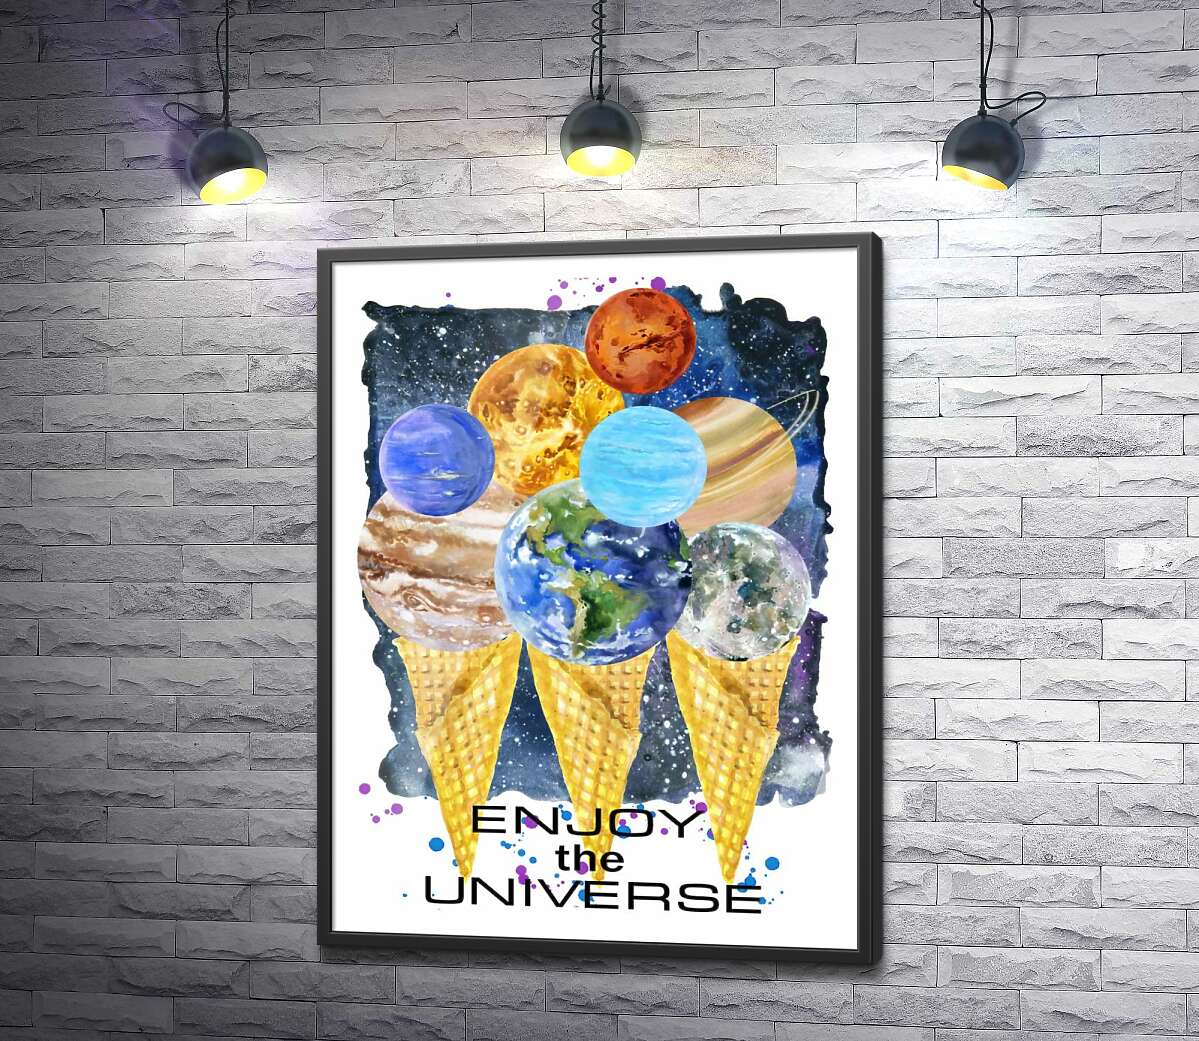 постер Планети Сонячної системи зібрались на ріжках морозива з написом "enjoy the universe"